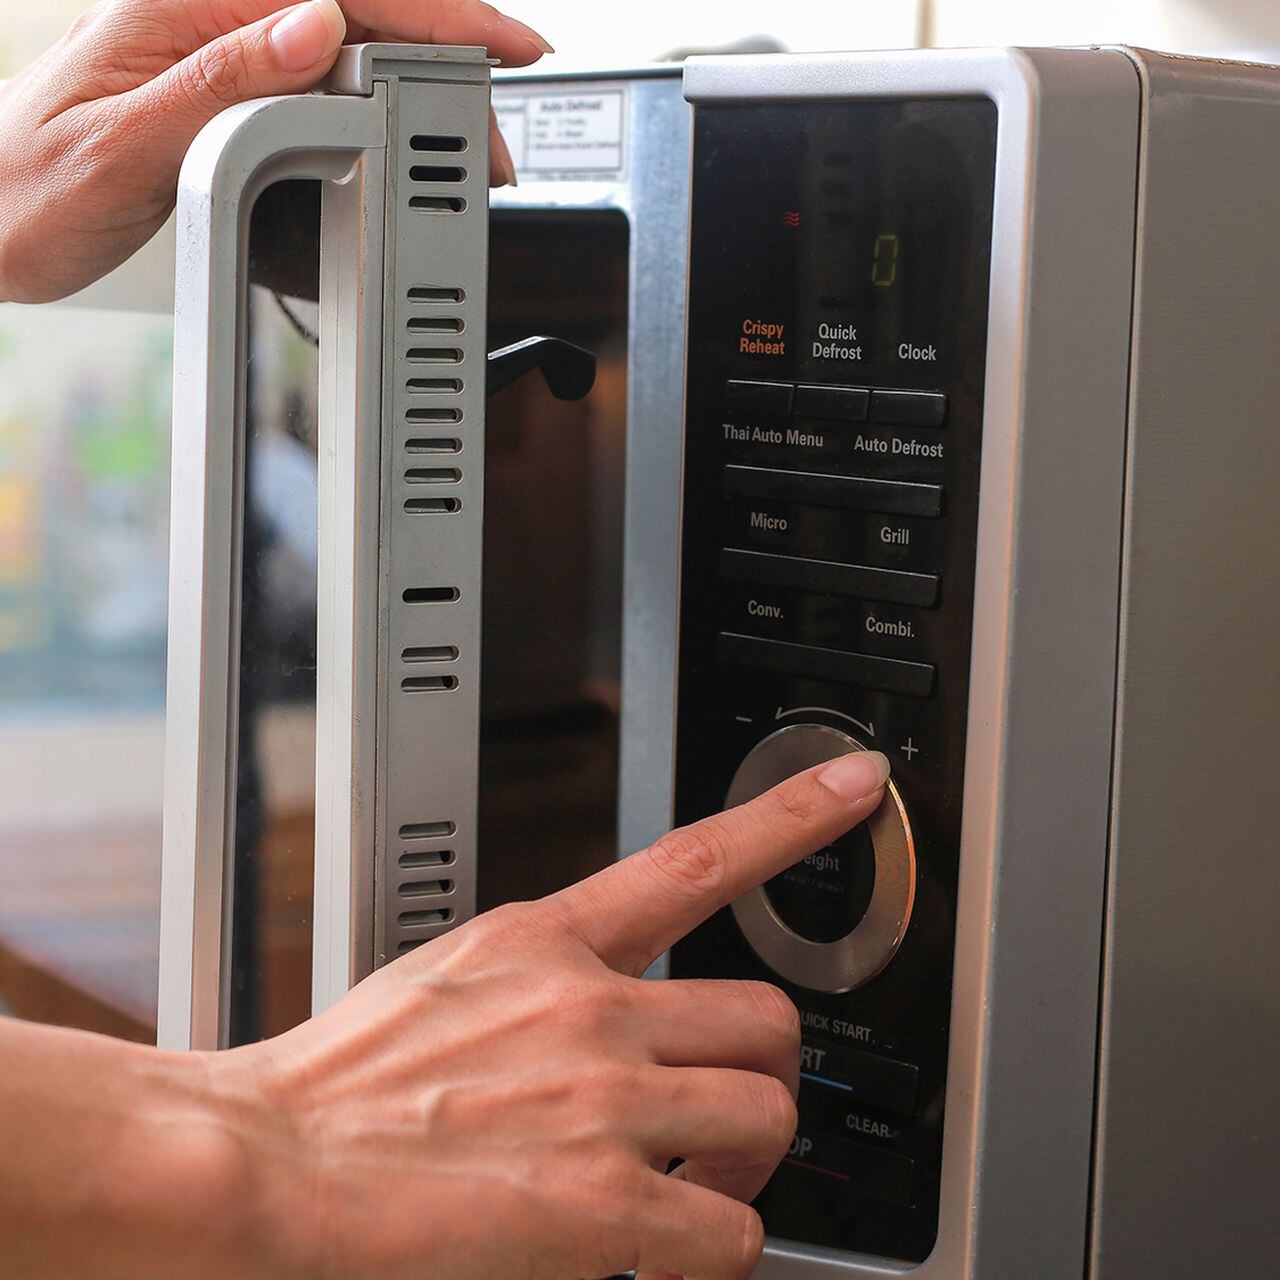 Las 12 cosas que no debes meter nunca en el microondas